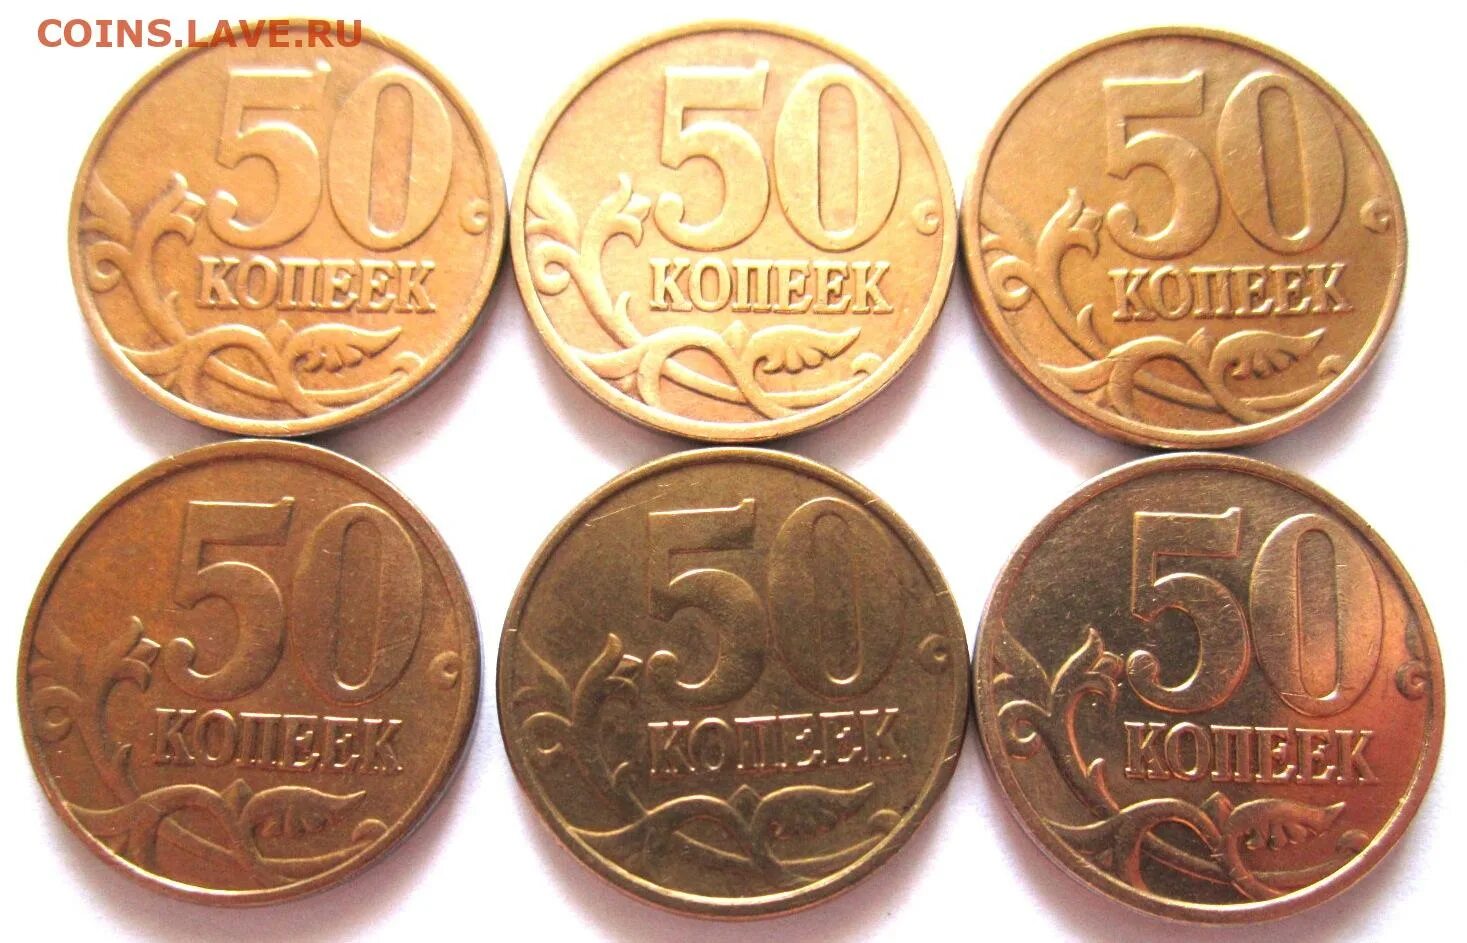 20 от 45 рублей. 50 Копеек джипег. 1 Руб 50 копеек -25коп.. 5 Рублей . 12коп =. 31 Монетка.